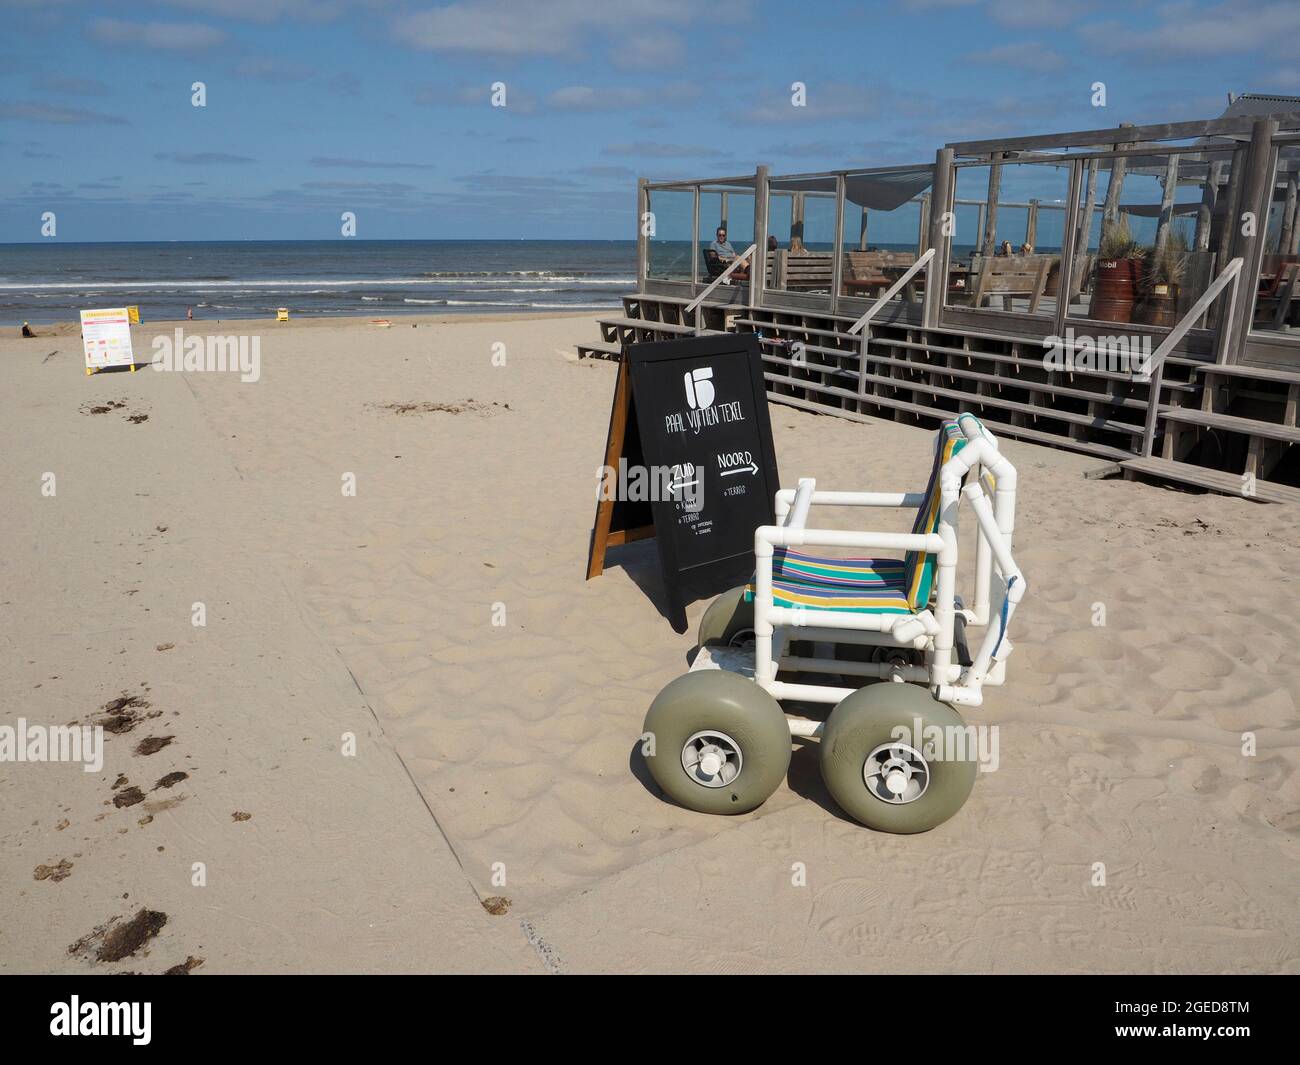 Chaise roulante spéciale pour donner aux personnes handicapées la possibilité de profiter de la plage à Paal 15, île de Texel, pays-Bas Banque D'Images